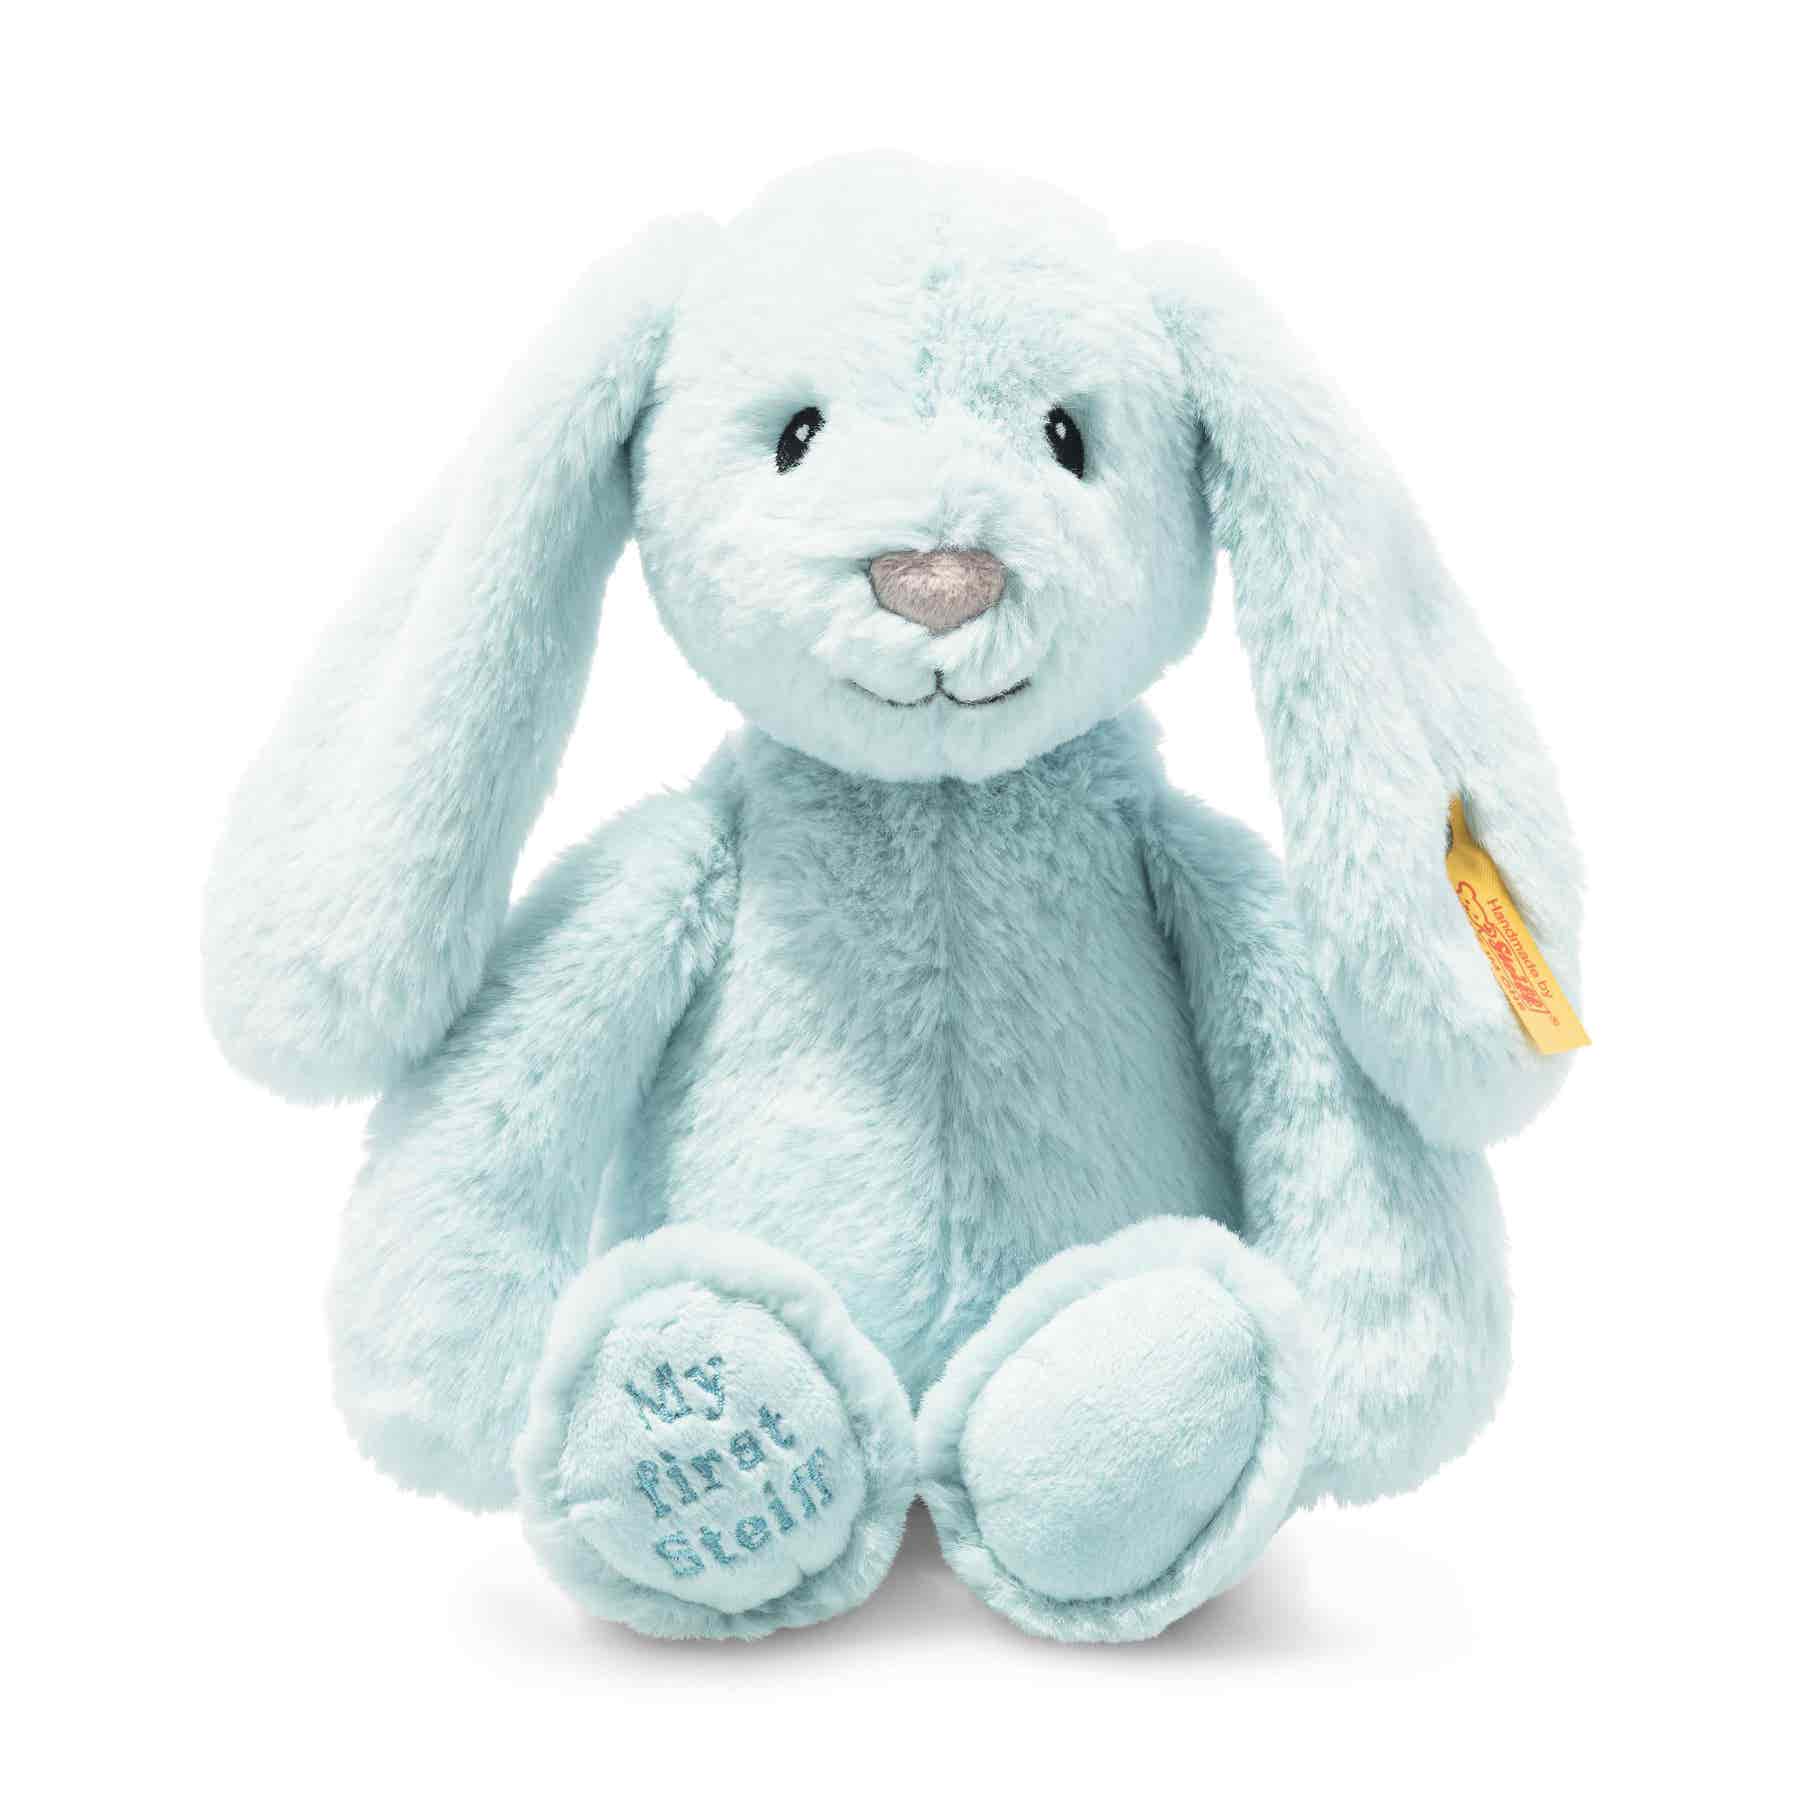 Soft Cuddly Friends My first Steiff Hoppie rabbit